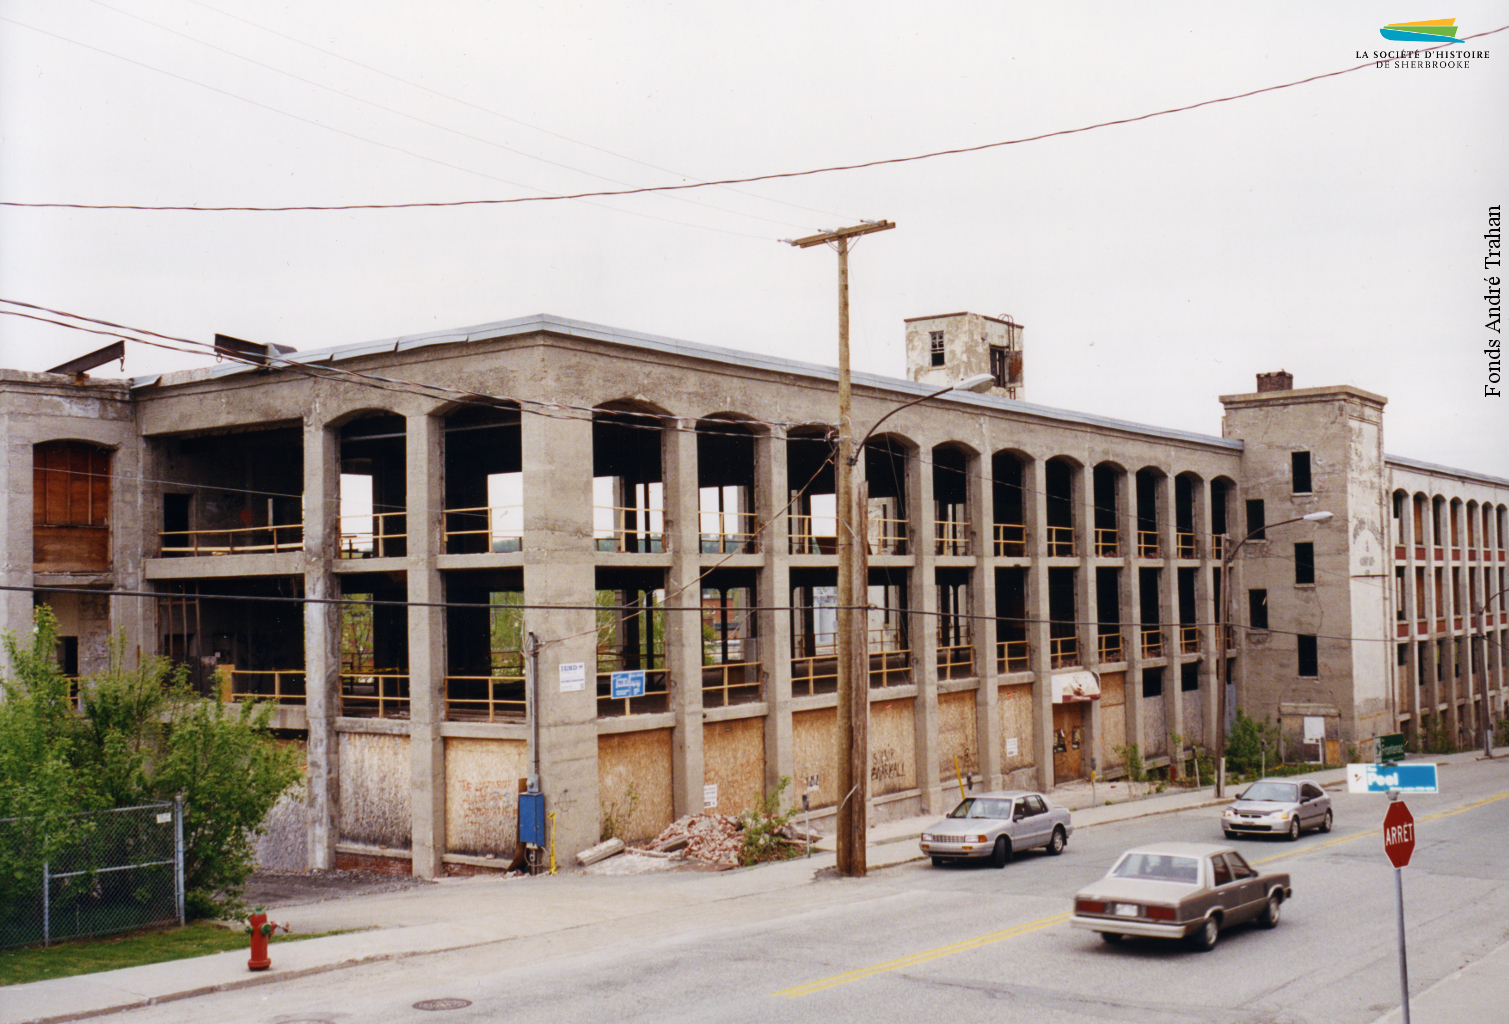 Les vestiges de l’usine Kayser, située sur la rue Frontenac, en 2000. Le bâtiment est par la suite converti pour accueillir une résidence pour personnes âgées, le Musée de la Nature et des Sciences, et les locaux de Bibliothèque et Archives nationales du Québec.